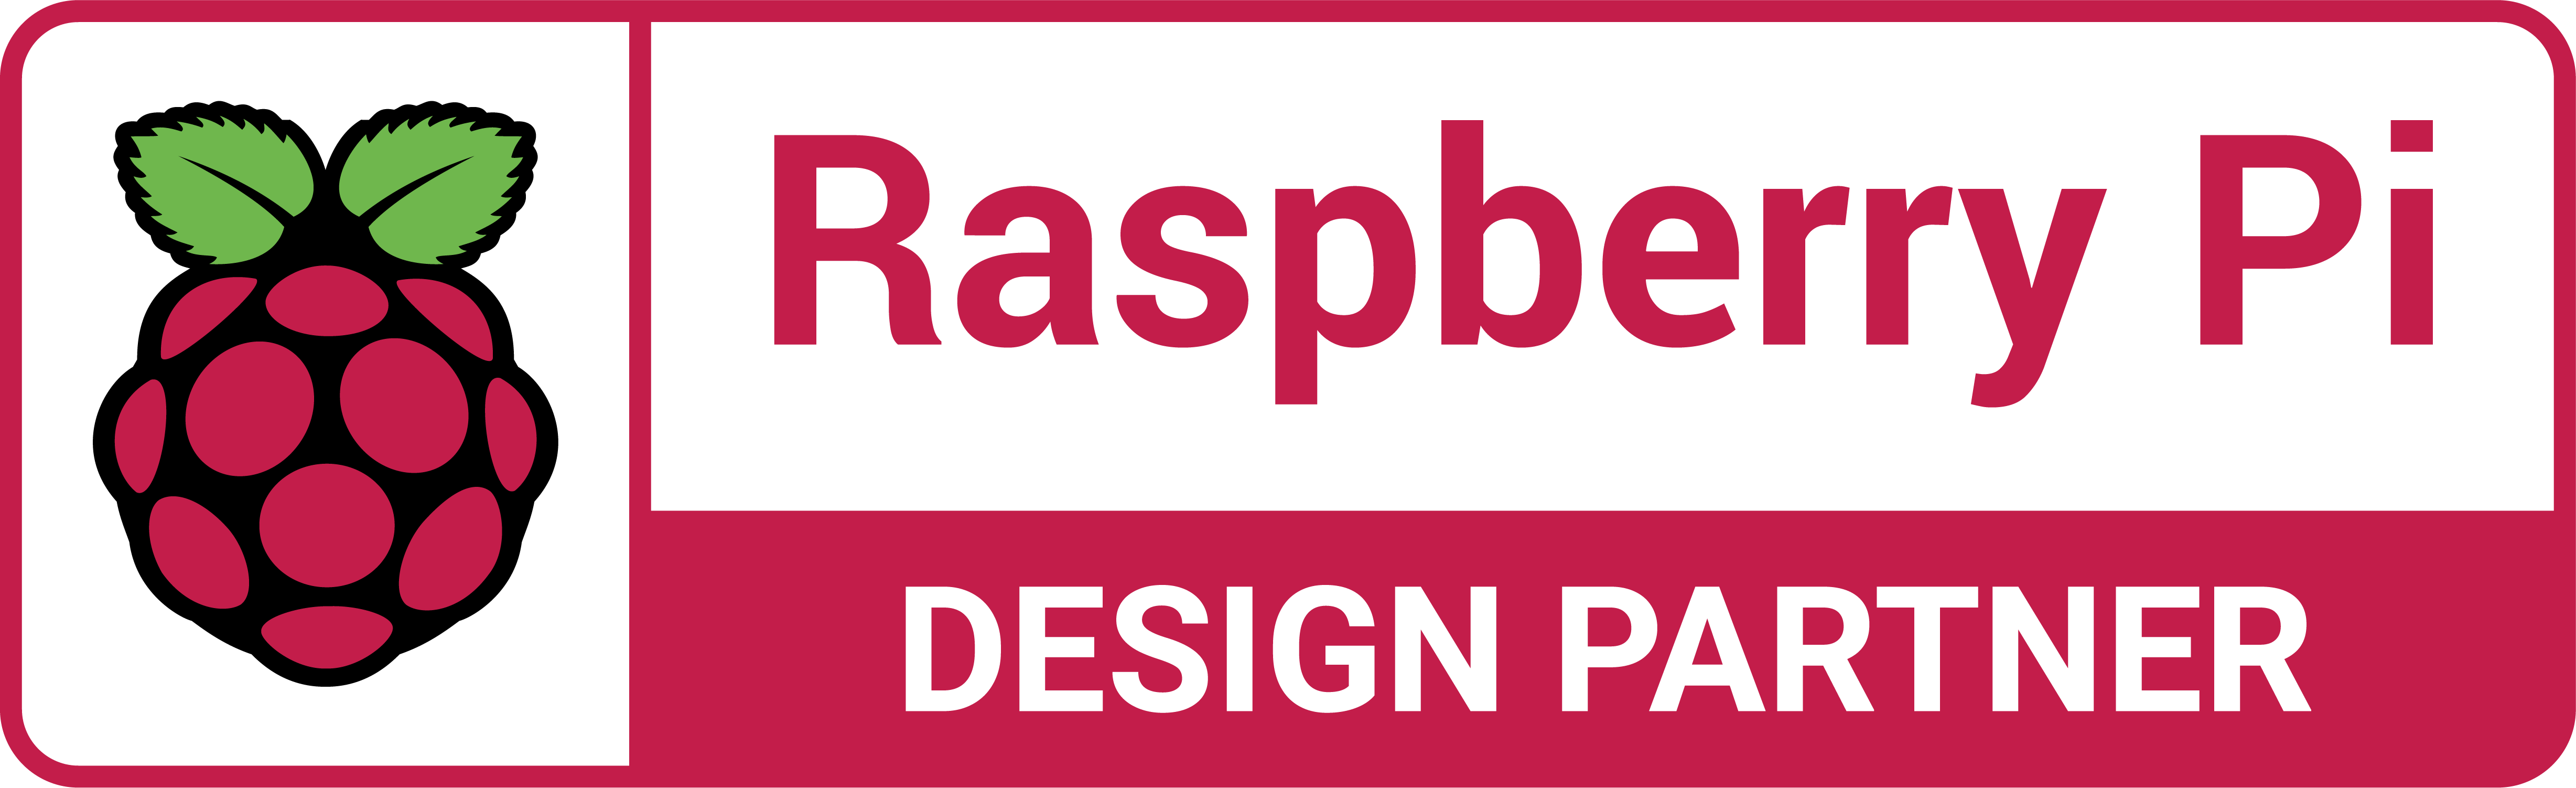 Raspberry Pi Approved Design Partner 